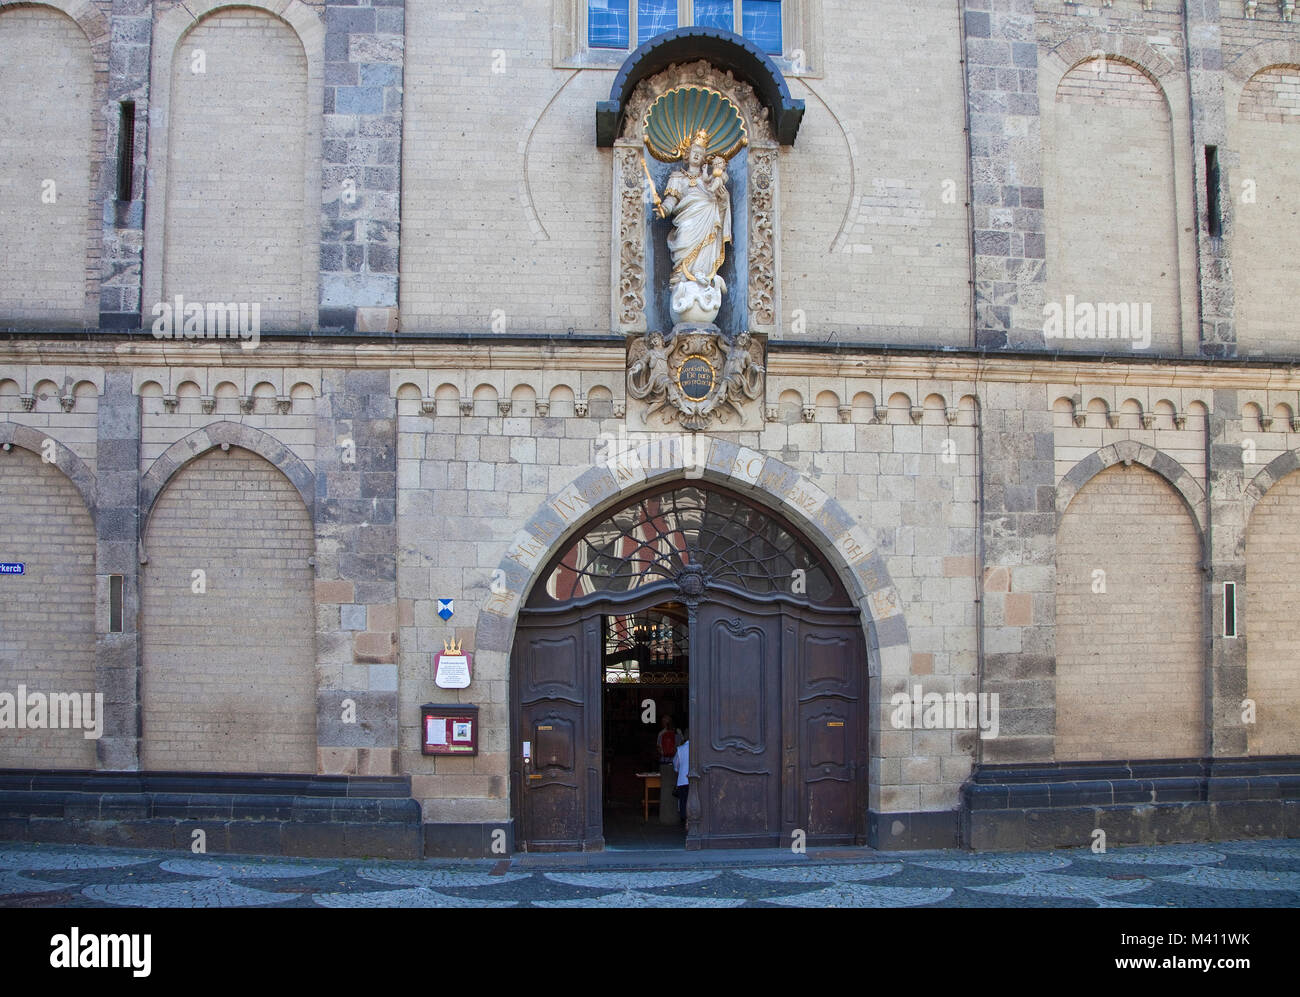 Entrée de Liebfrauenkirche (église Notre Dame) avec statue de la Vierge Marie, la vieille ville de Coblence, Rhénanie-Palatinat, Allemagne, Europe Banque D'Images